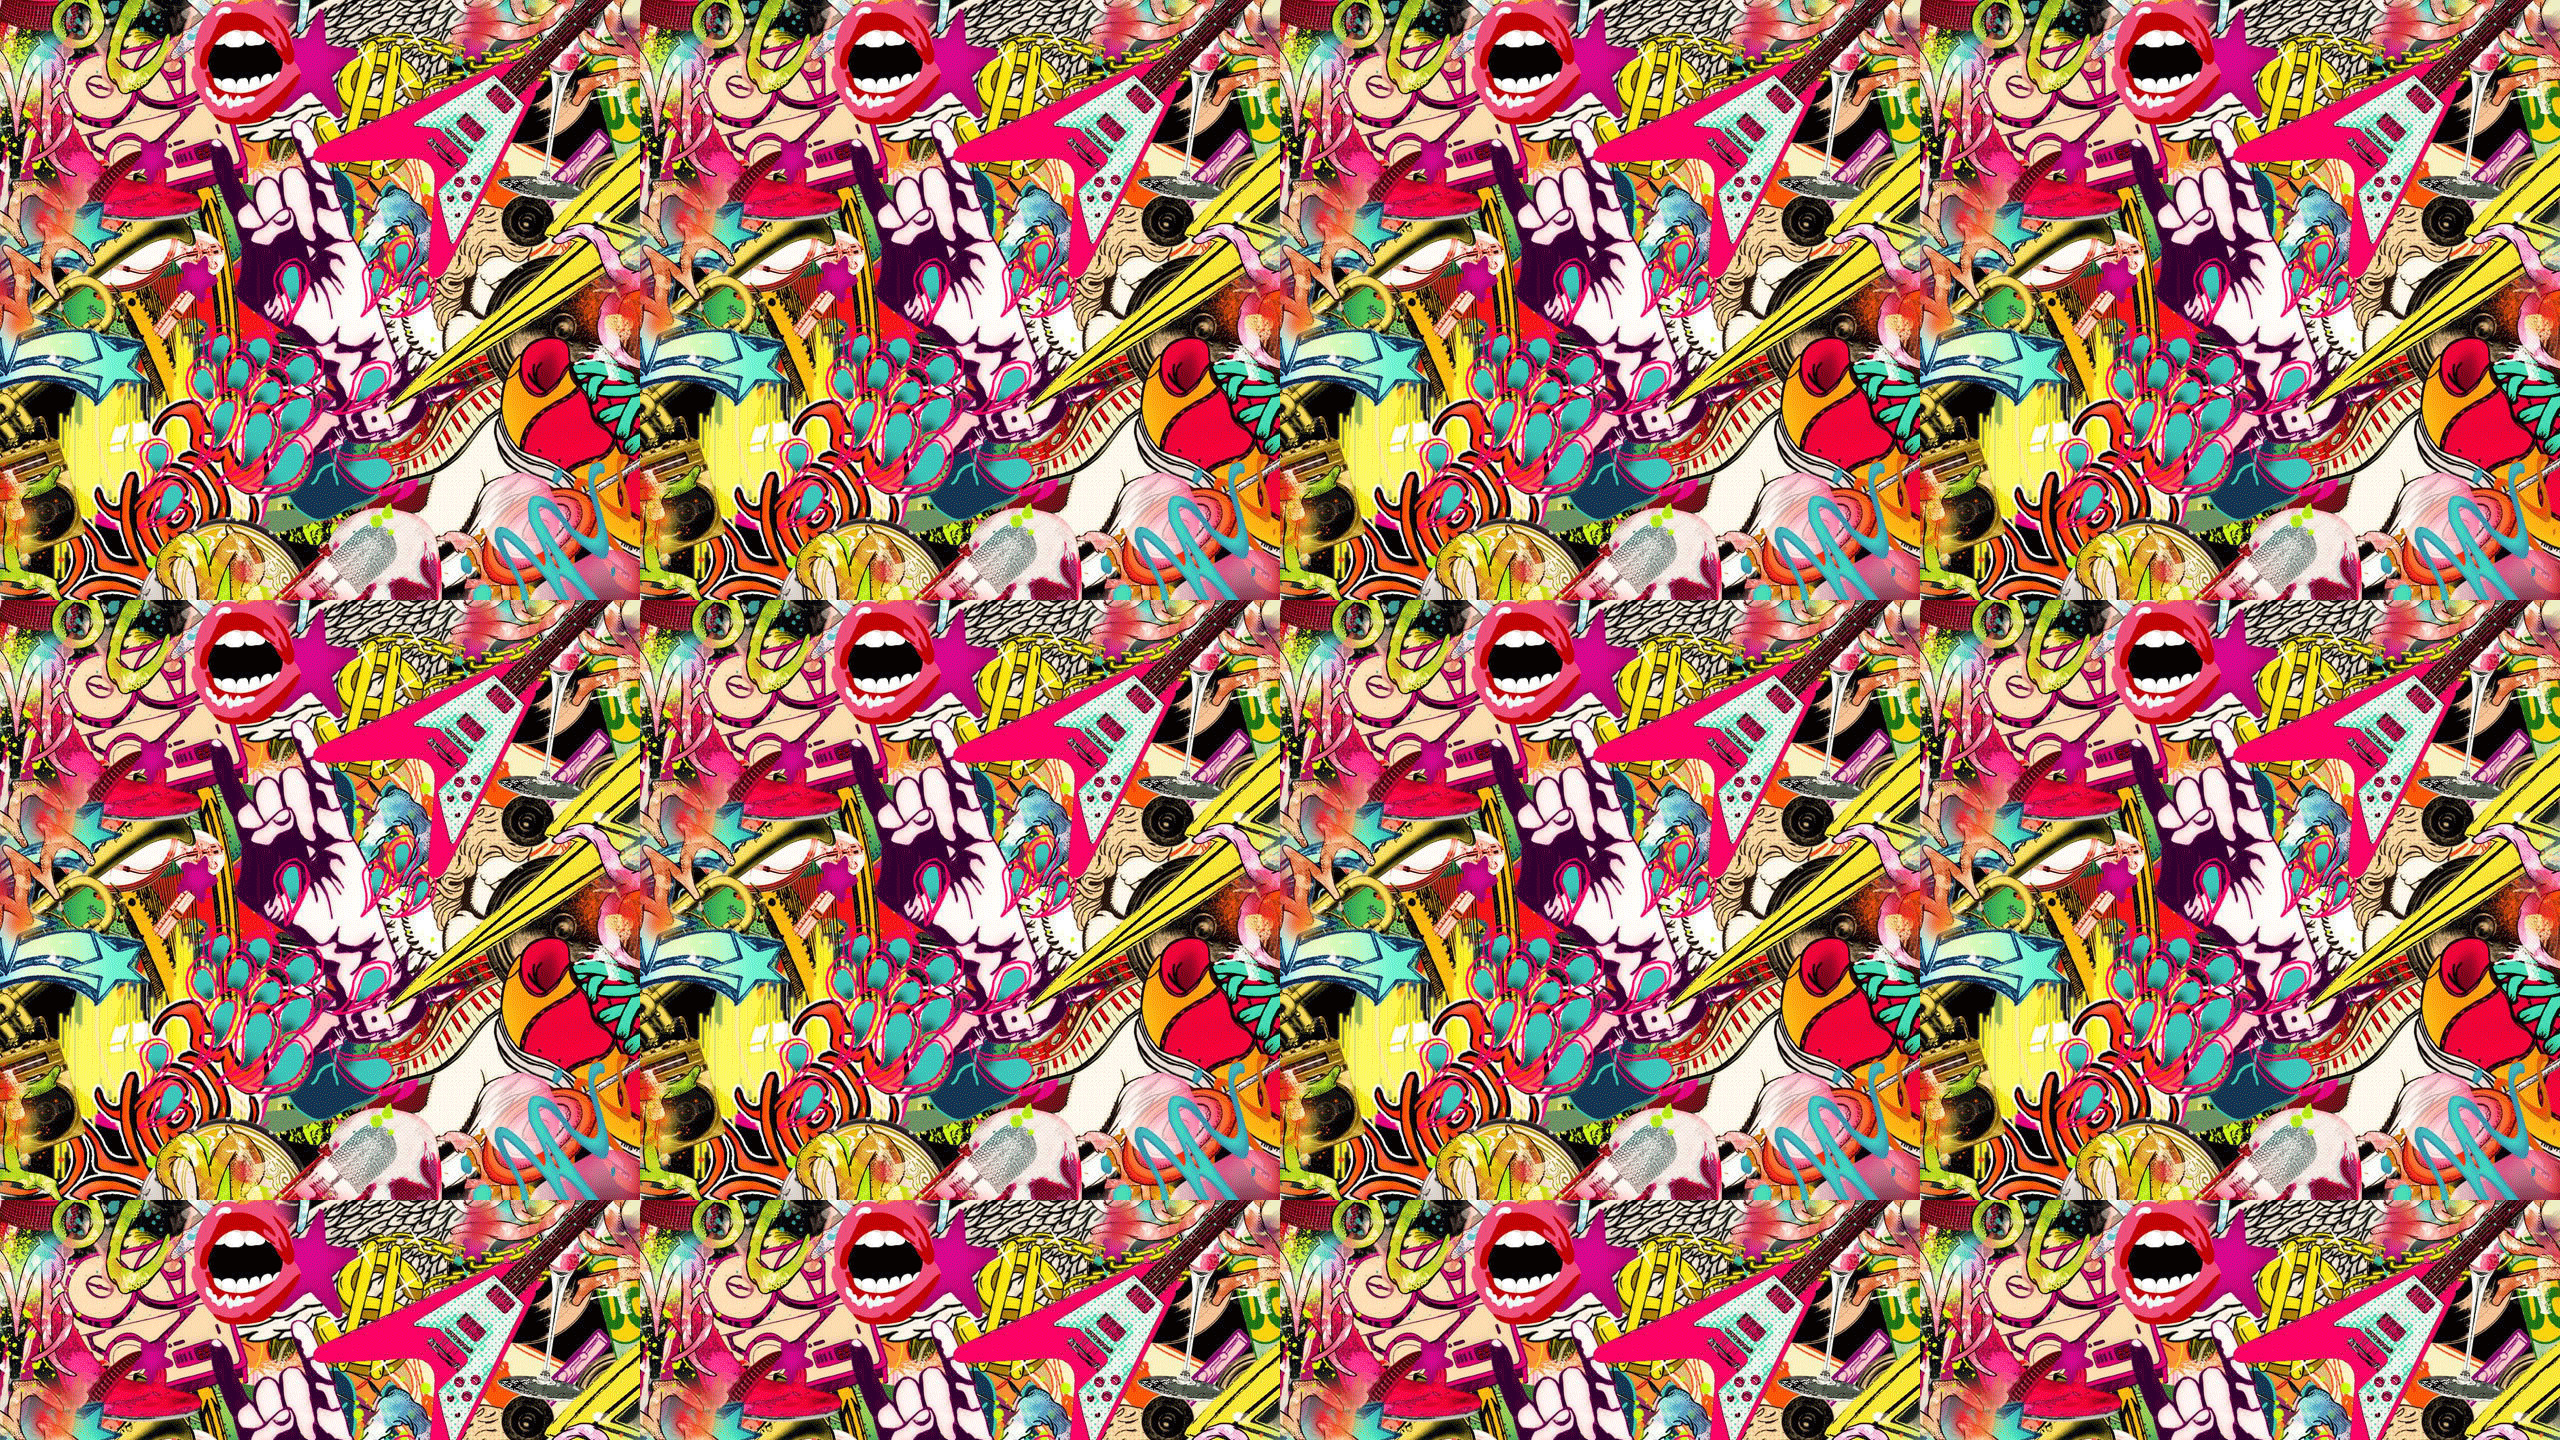 2560x1440 ... Fashion Collage wallpapers - Crazy Frankenstein ...